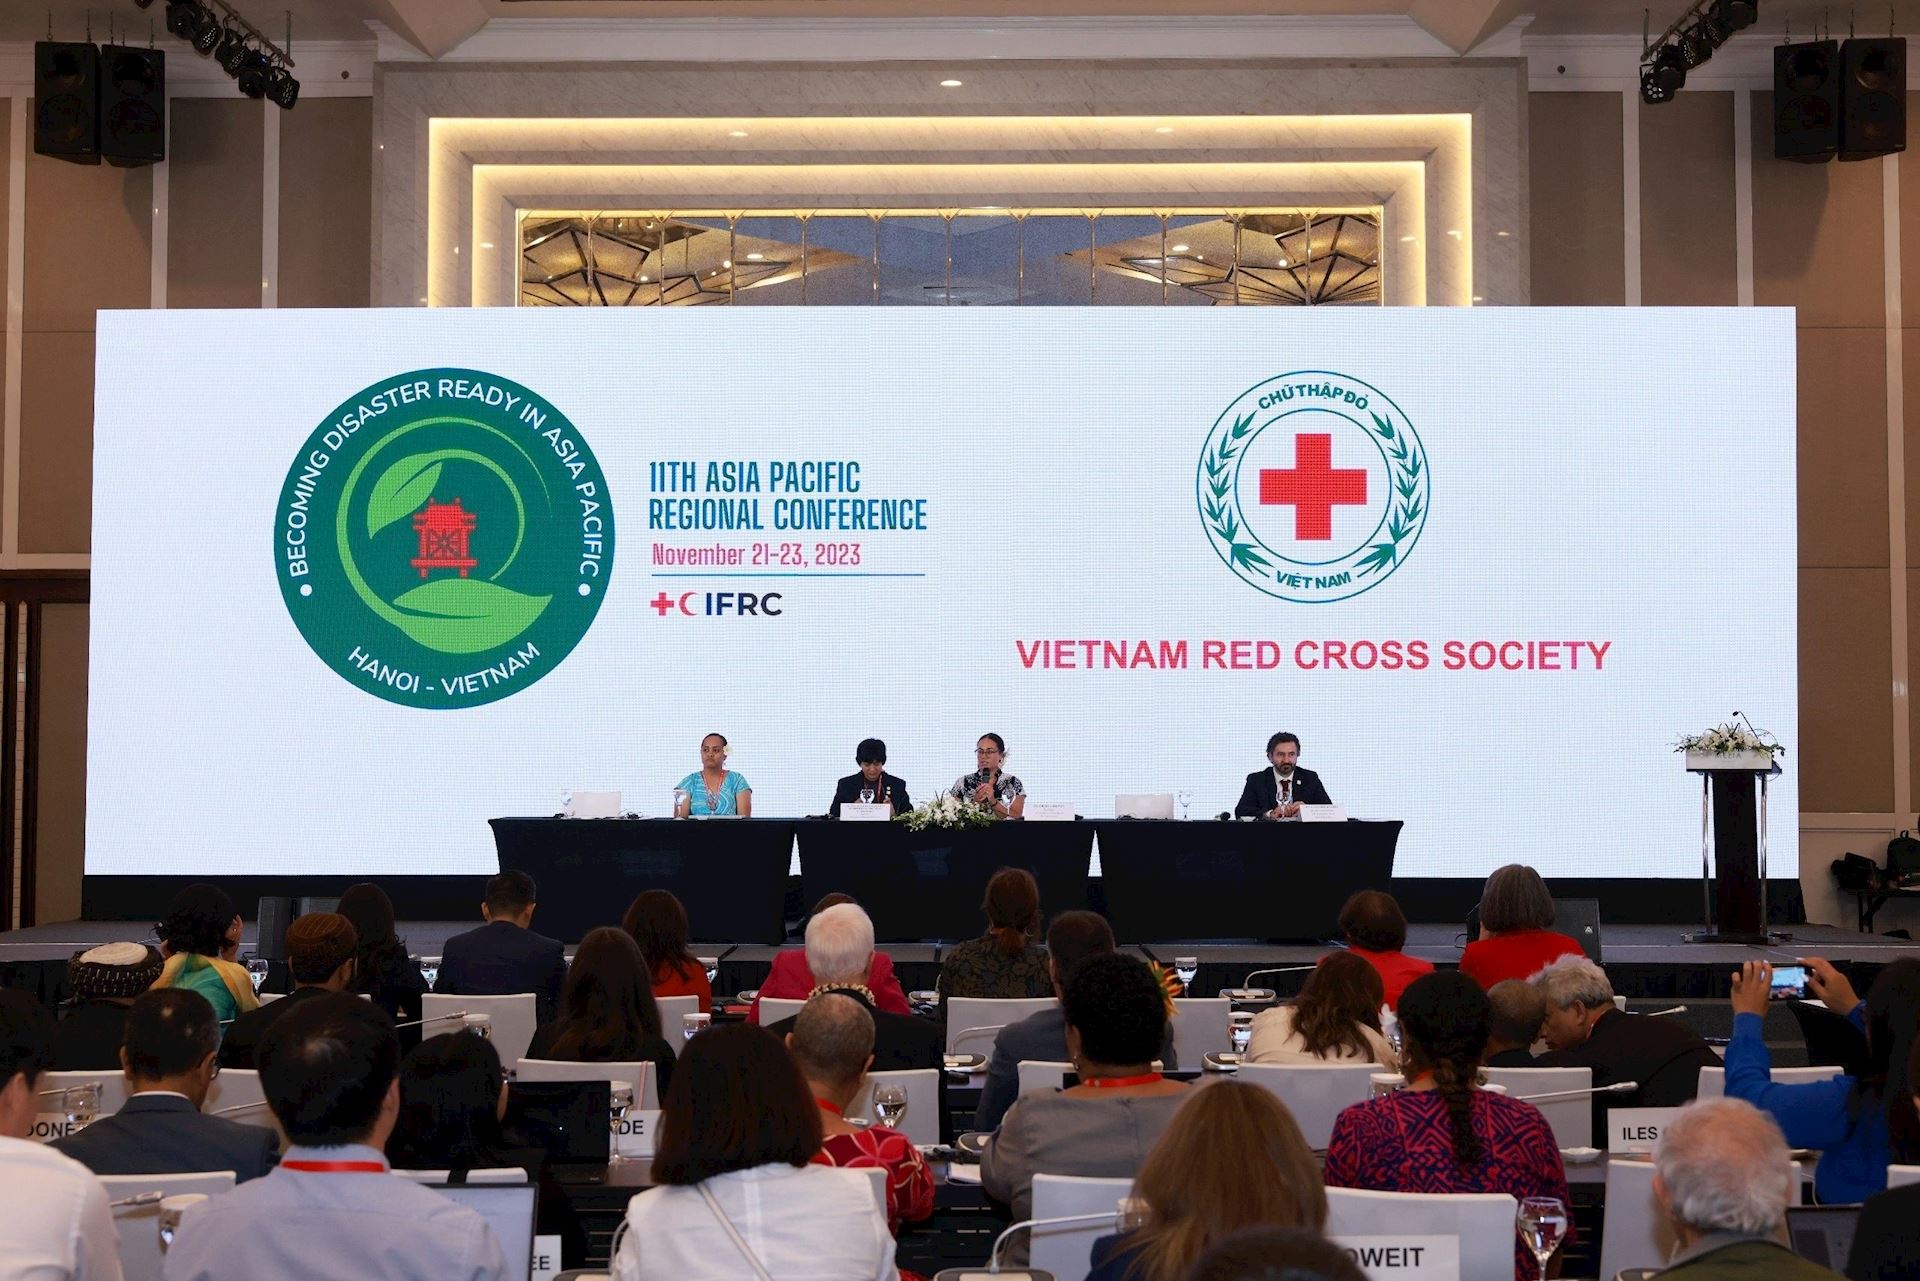 Hội Chữ thập đỏ Việt Nam là nước chủ nhà đăng cai tổ chức Hội nghị Chữ thập đỏ và Trăng lưỡi liềm đỏ quốc tế khu vực Châu Á - Thái Bình Dương lần thứ 11. 